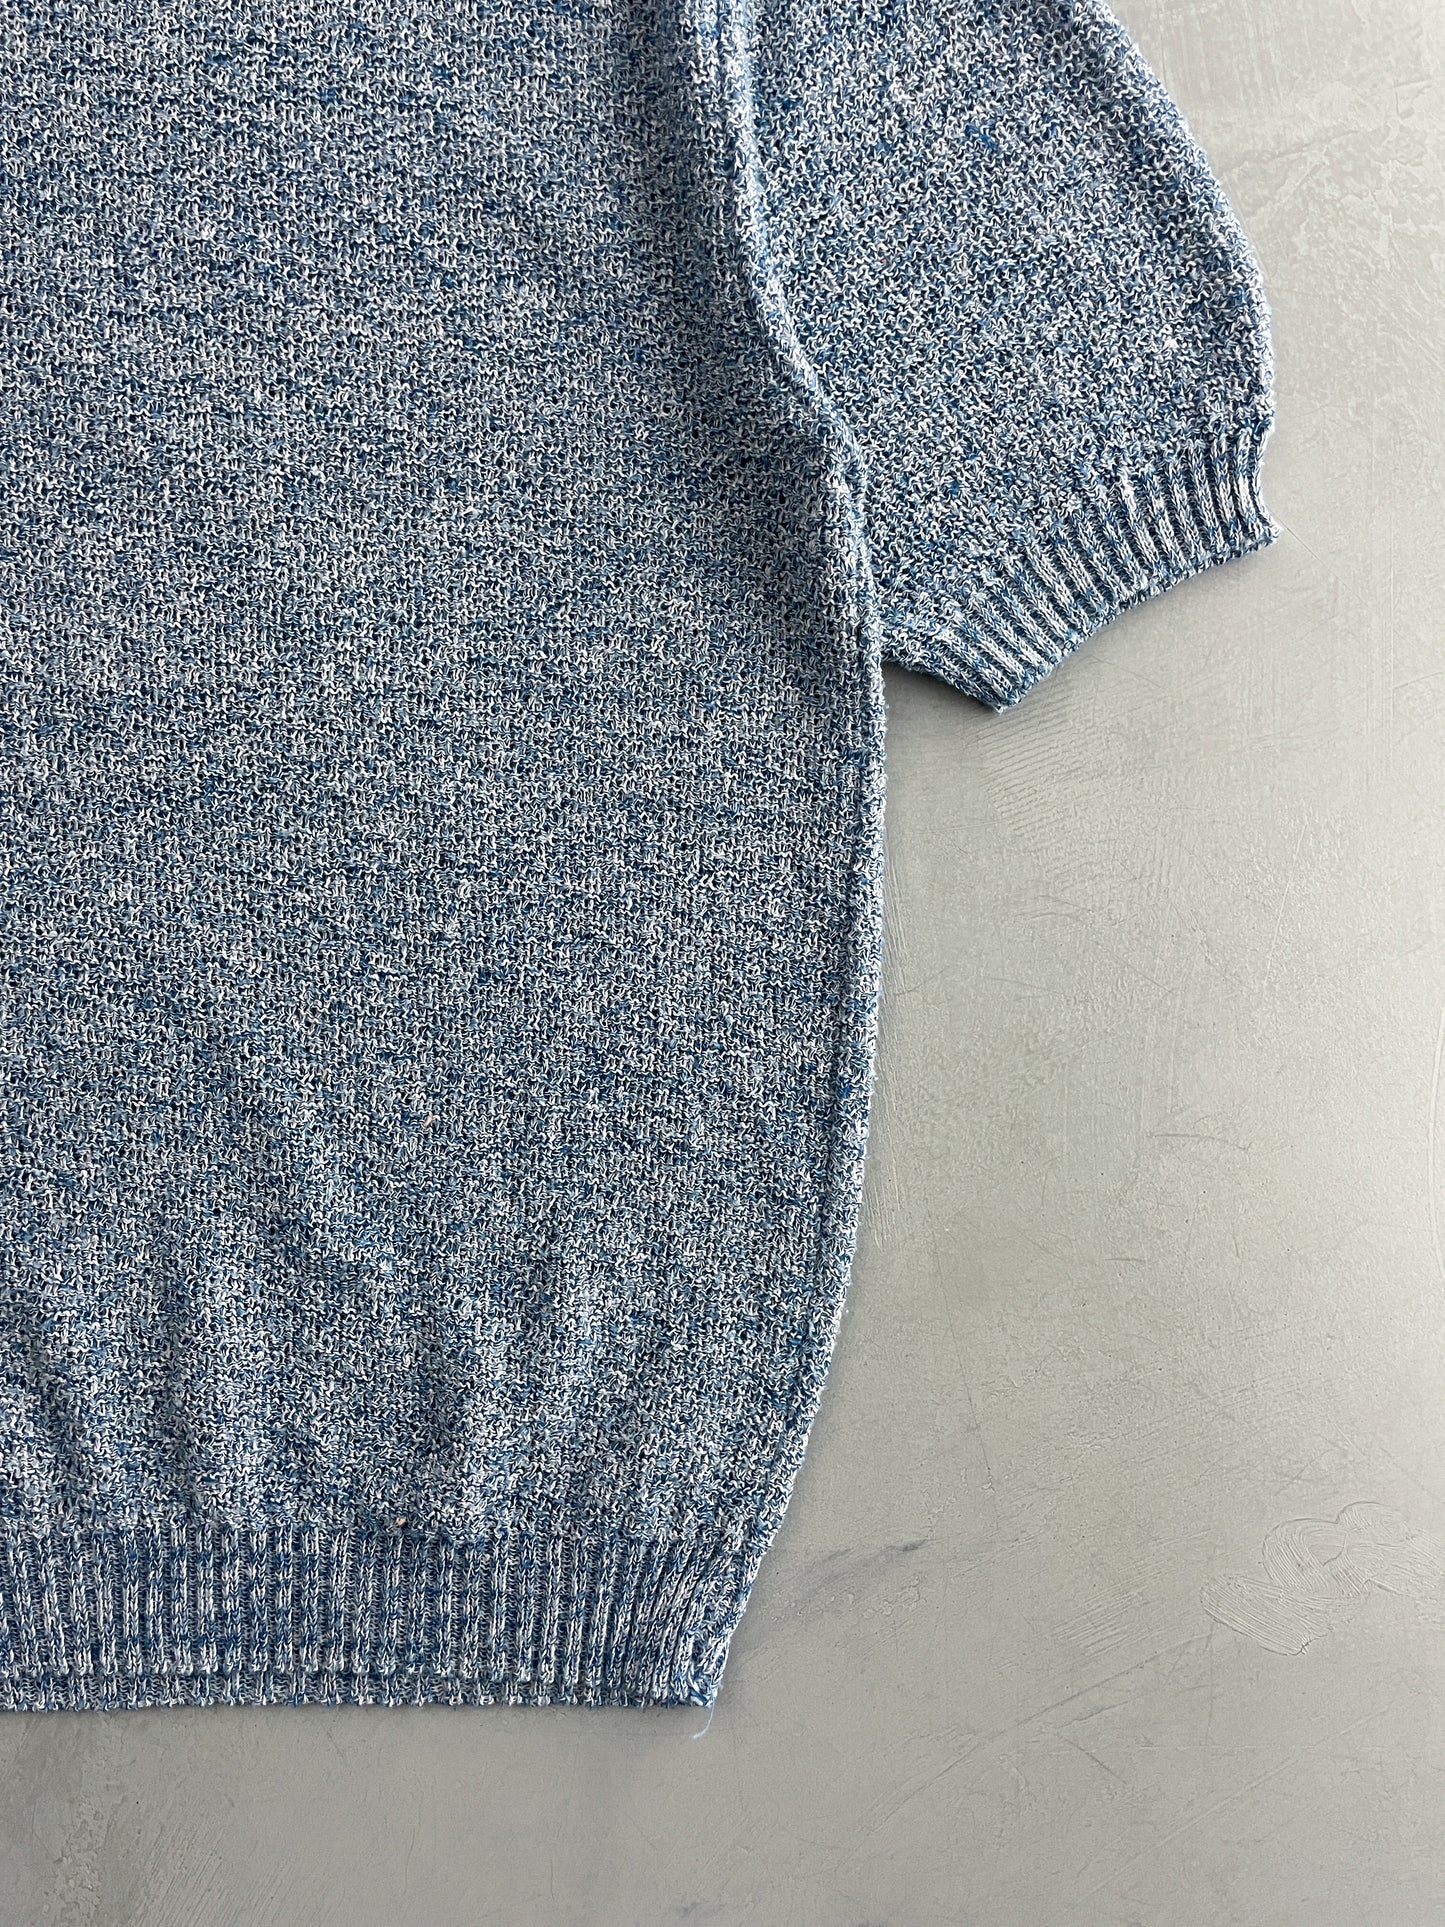 60's Van Dyke Knitted Shirt [L]